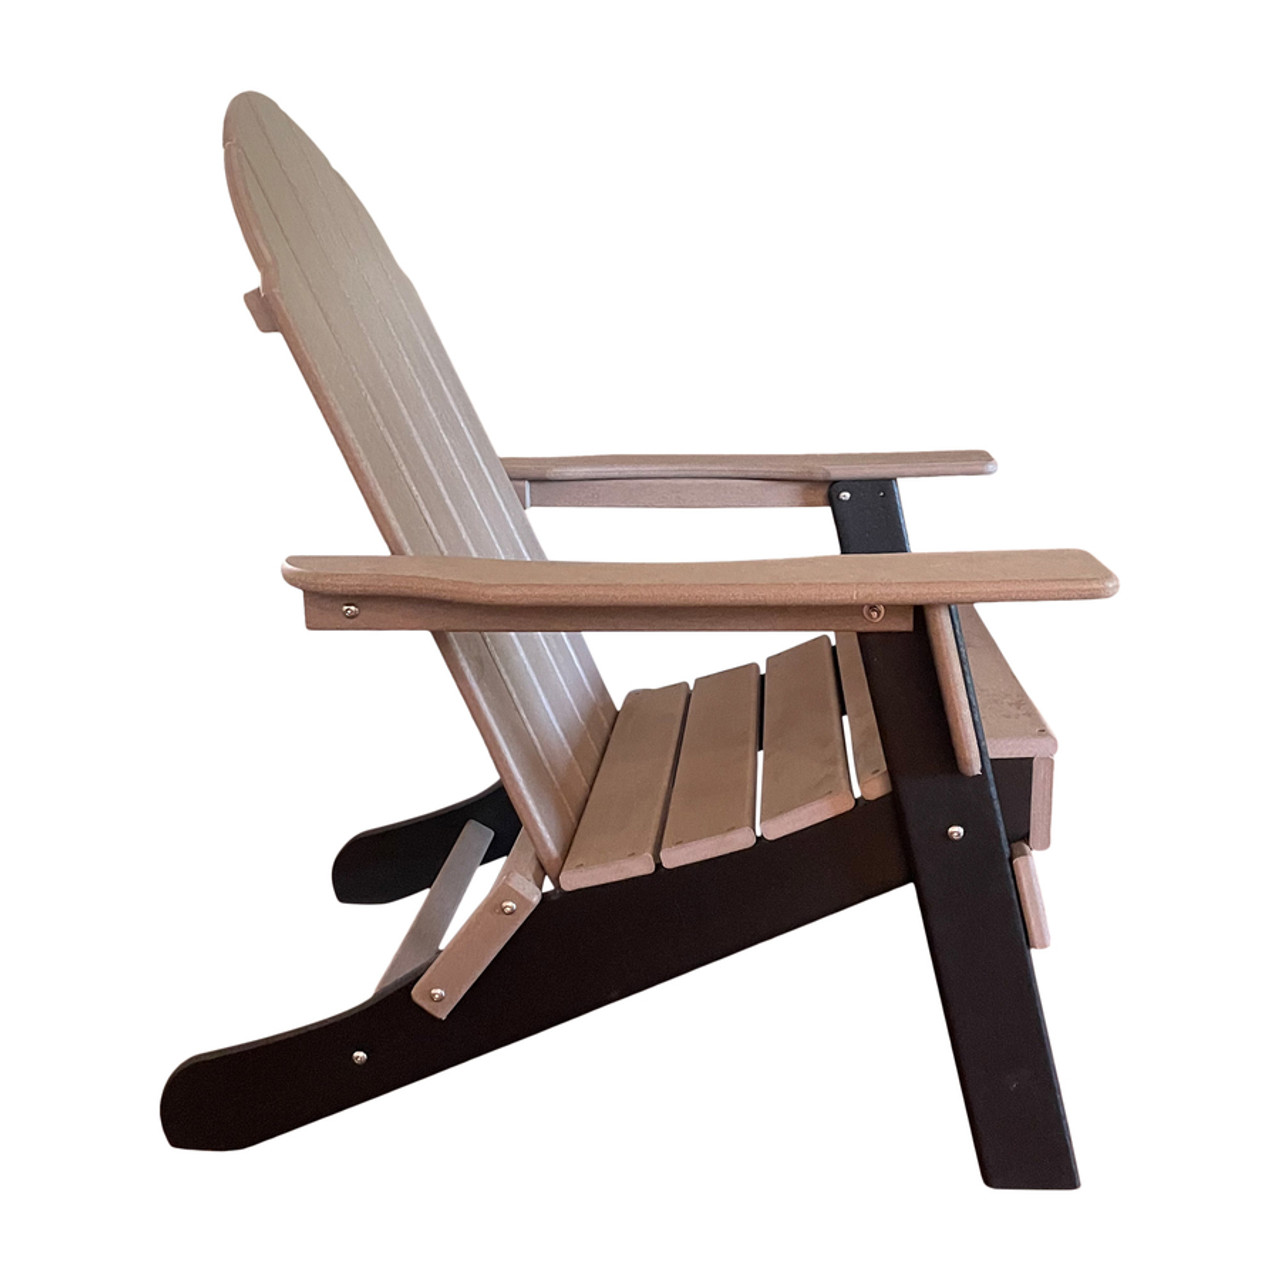 JJGeorge Composite Adirondack Chair  06036.1651059592 ?c=2